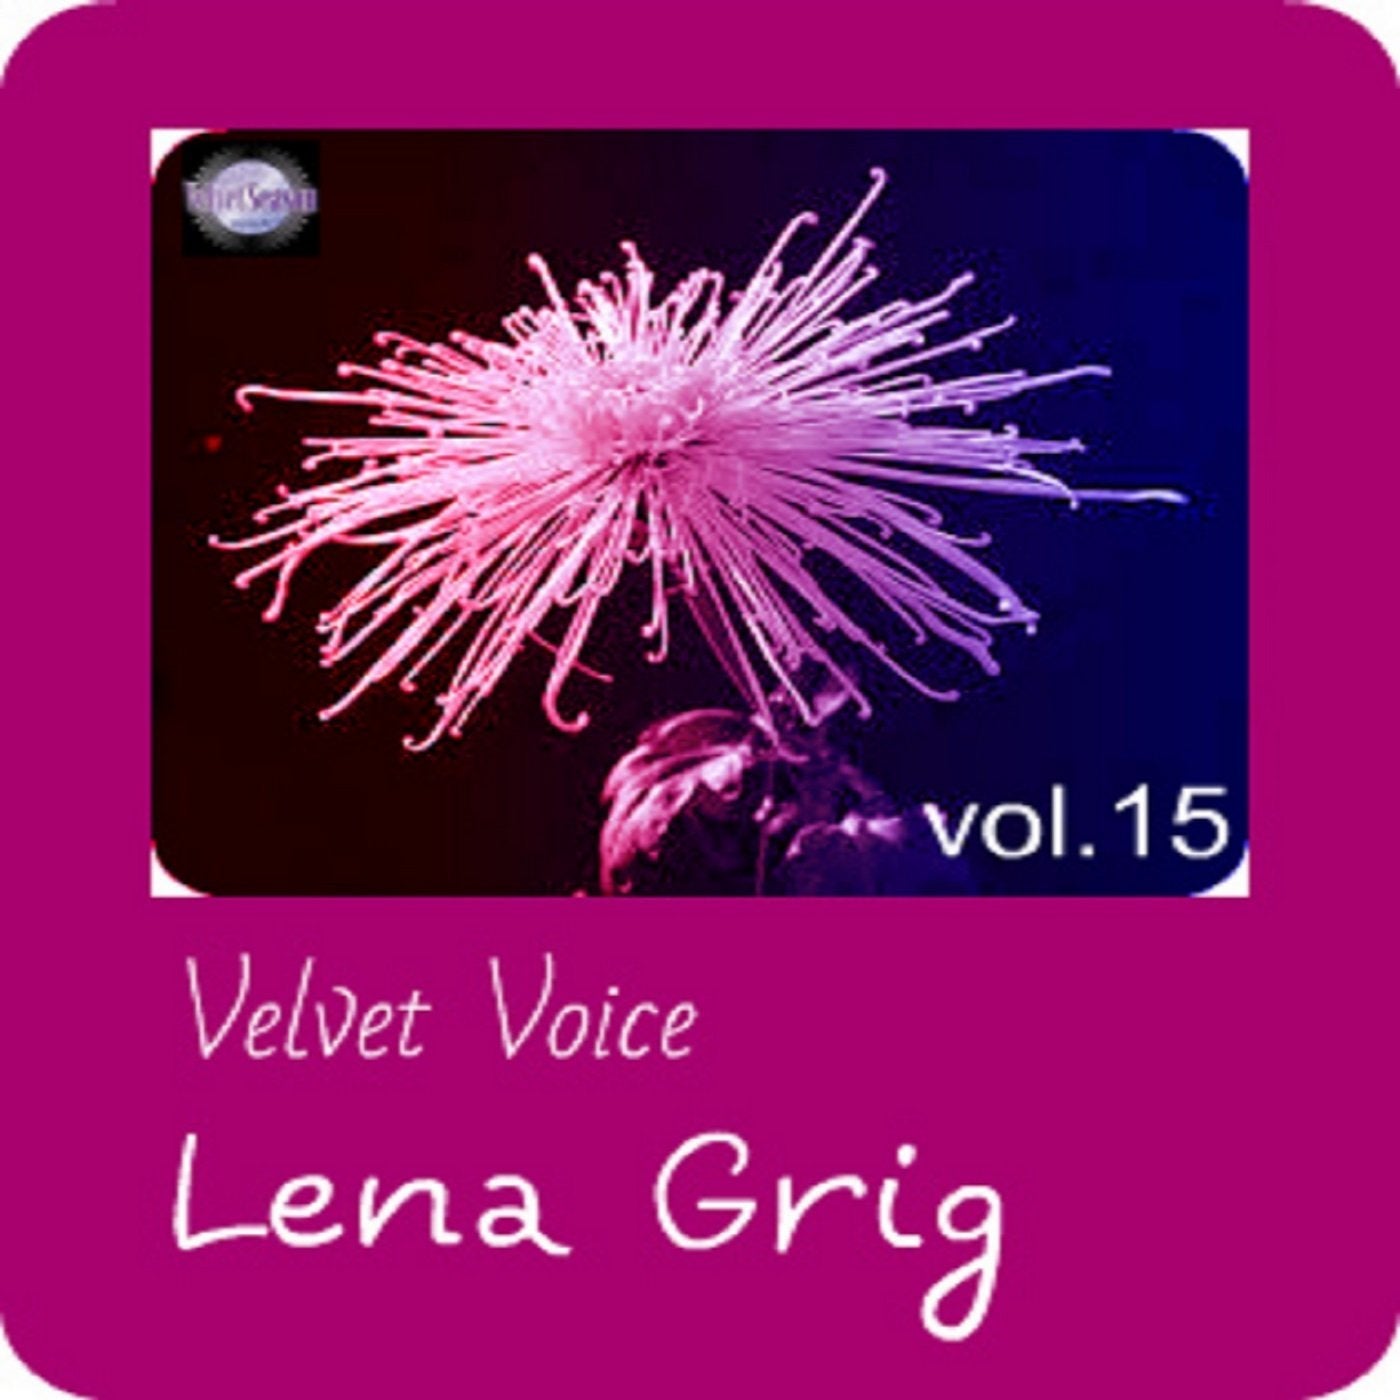 Velvet Voice, Vol. 15